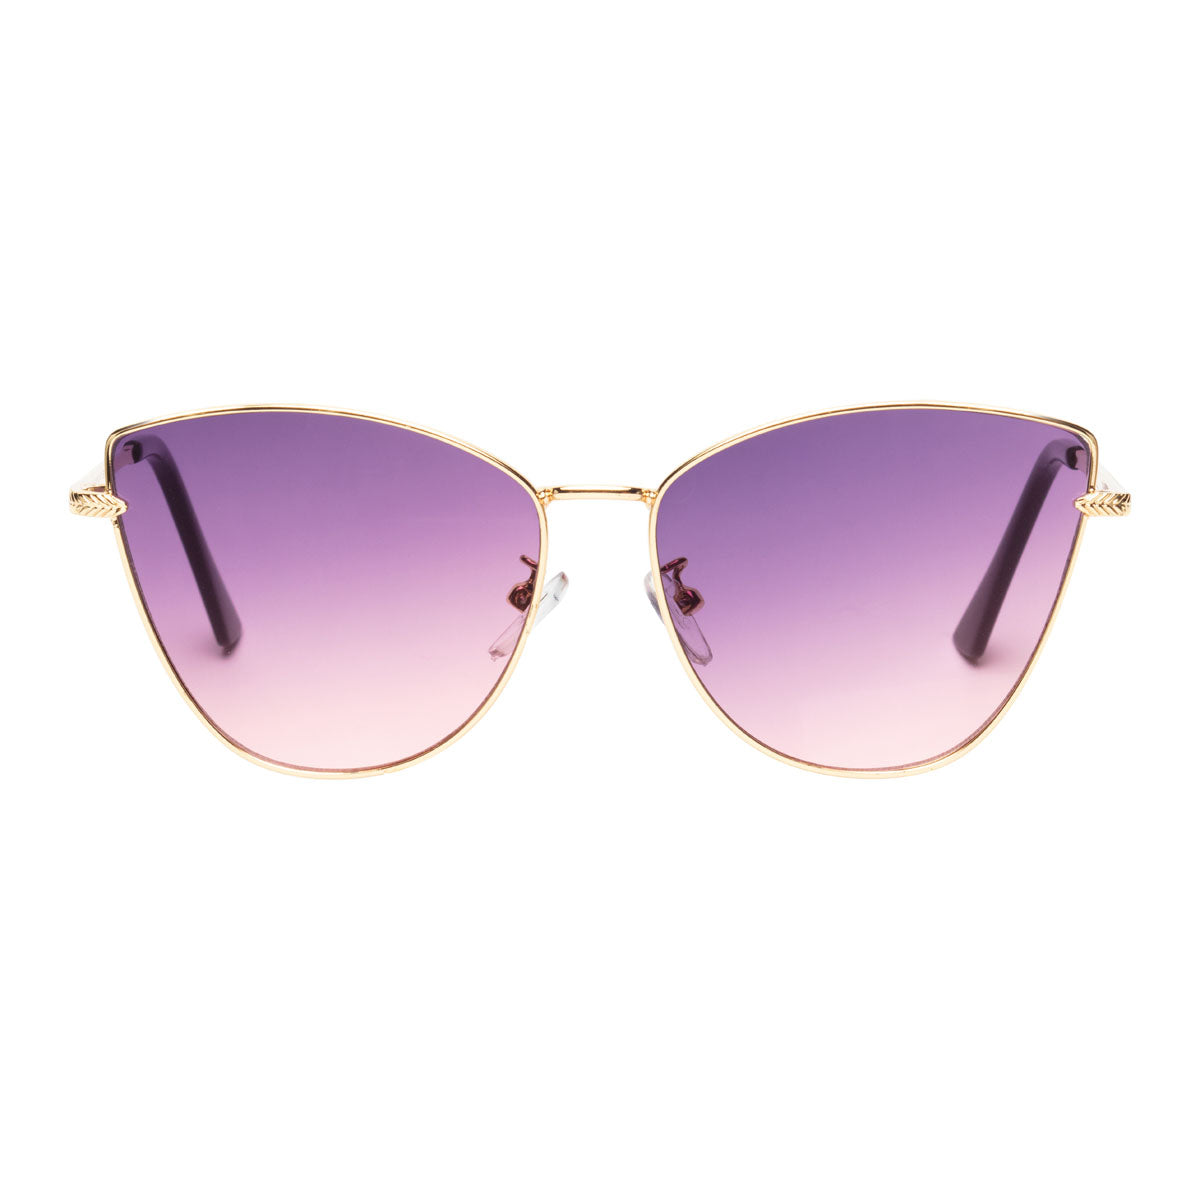 Sunglasses - EBS7013 Malibu